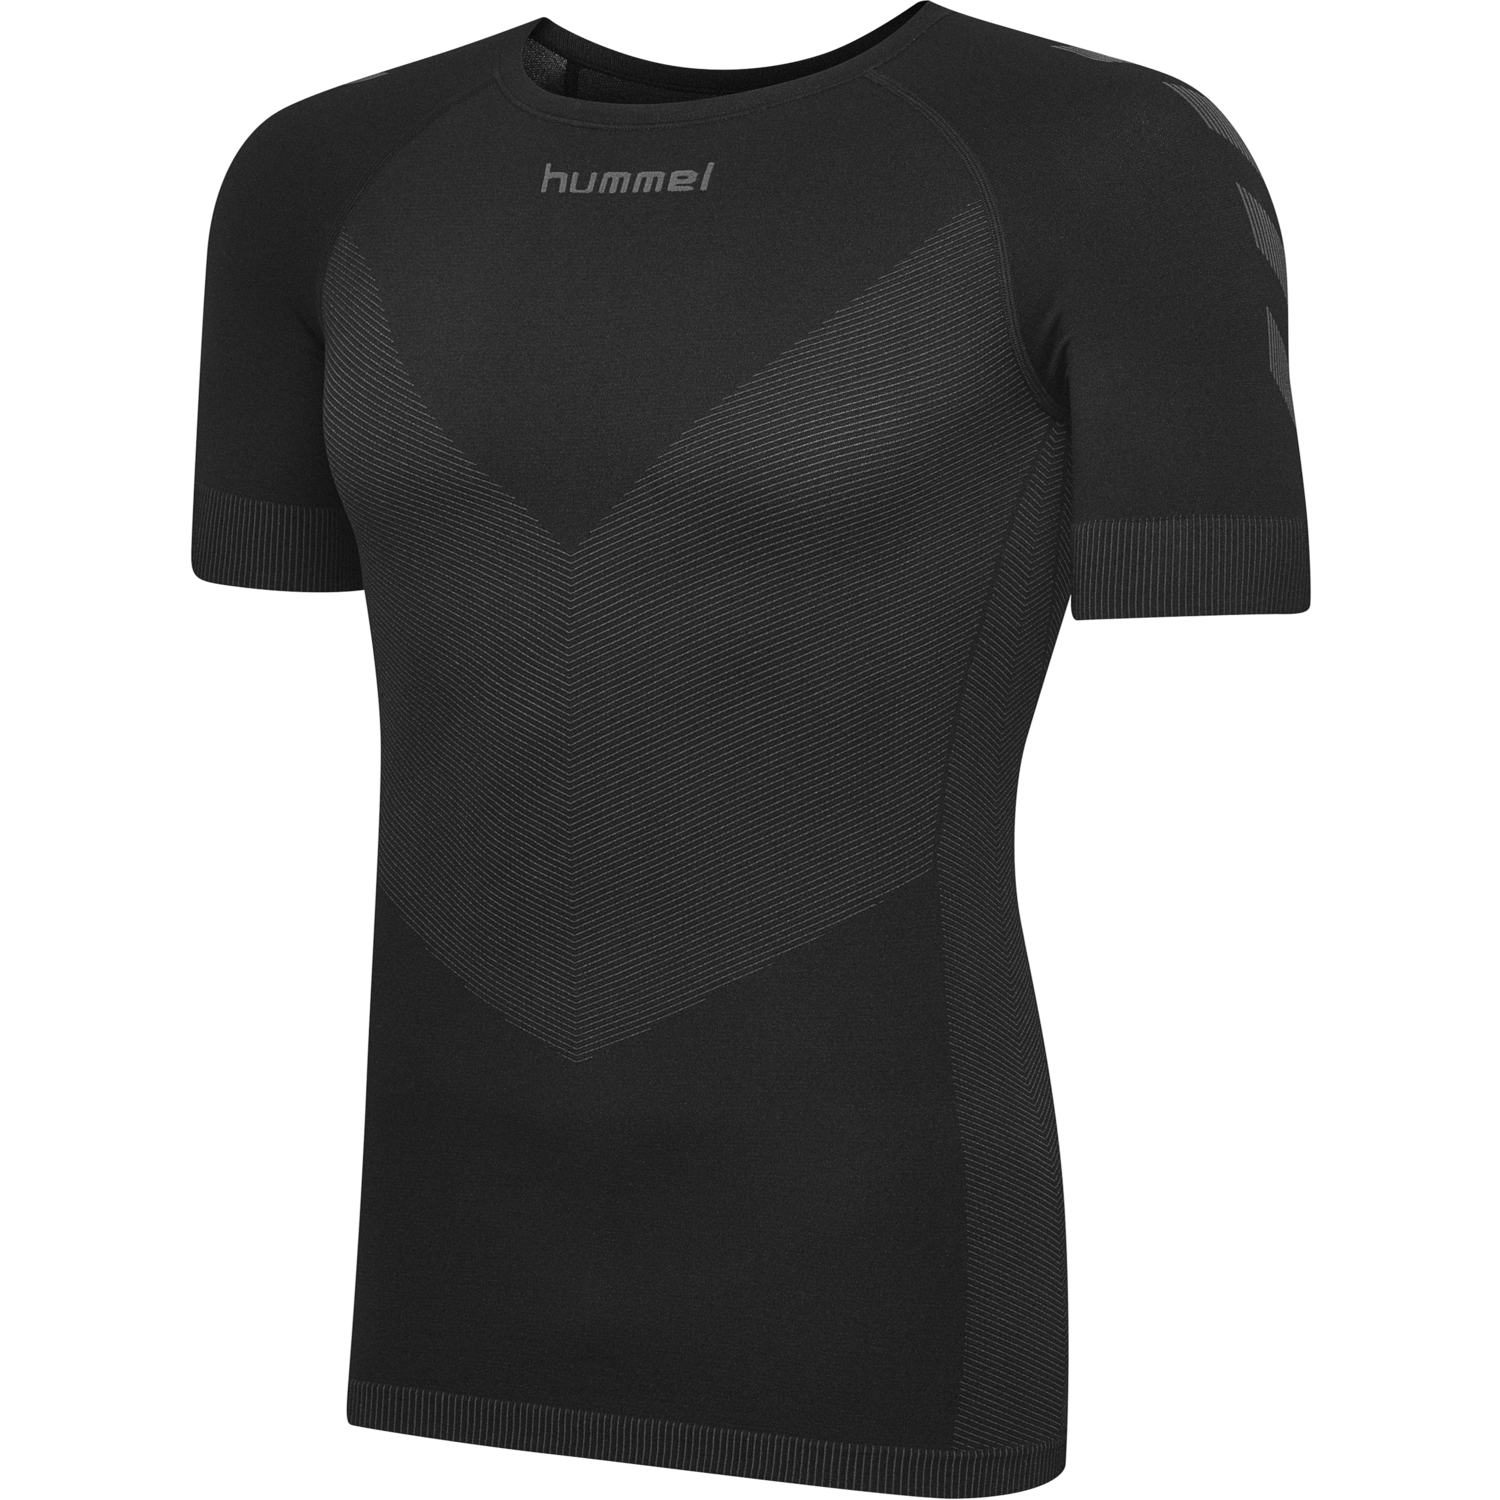 HUMMEL FIRST PERF SS JERSEY S-XXL NEU 35€ shirt funktionsshirt kompressionsshirt 